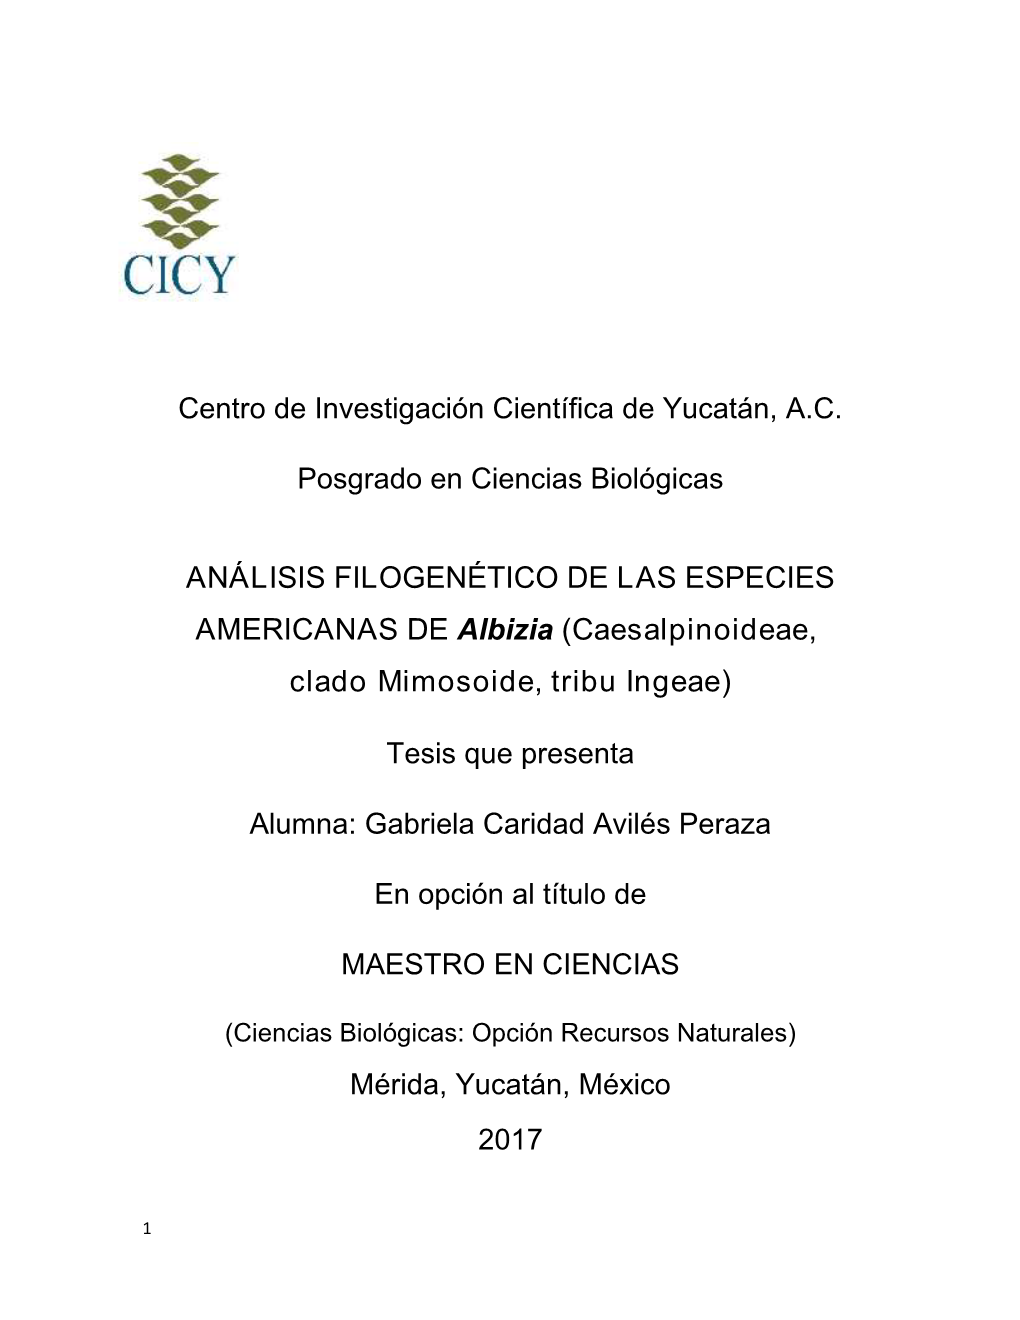 ANÁLISIS FILOGENÉTICO DE LAS ESPECIES AMERICANAS DE Albizia (Caesalpinoideae, Clado Mimosoide, Tribu Ingeae)